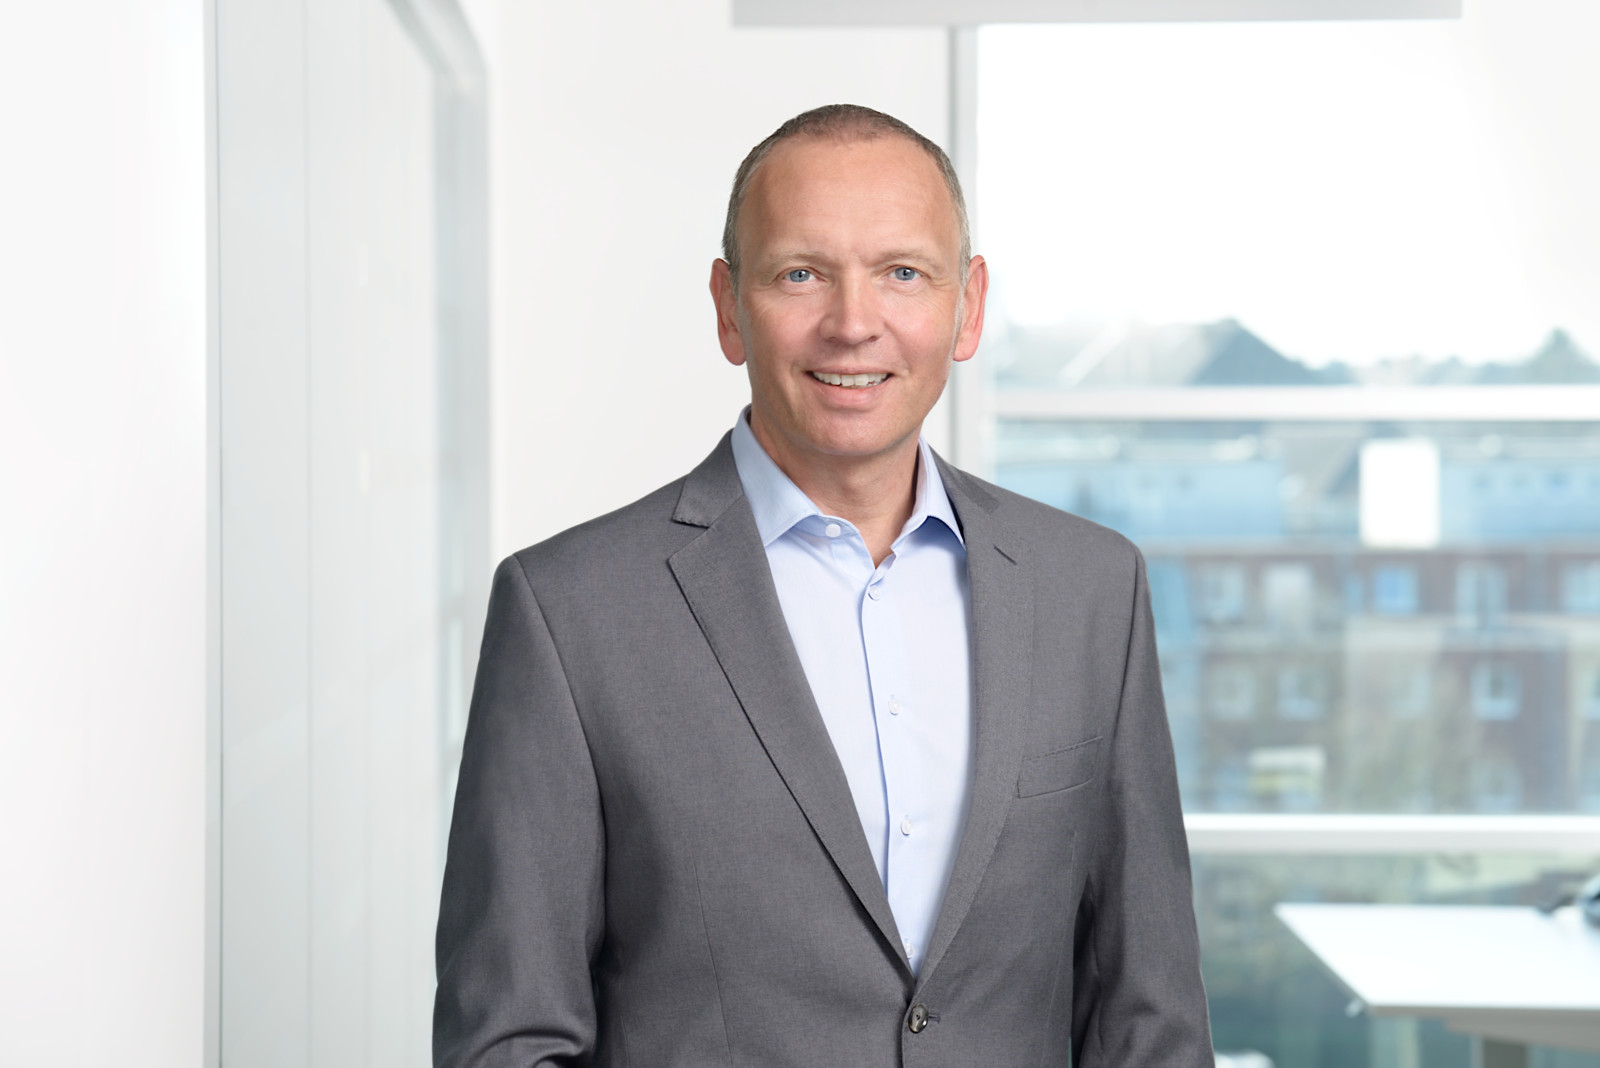 Roland Meyer ist seit 2018 Vorsitzender der Geschäftsführung von Leaseplan Deutschland, einem weltweit agierenden Car-as-a-Service-Anbieter. 